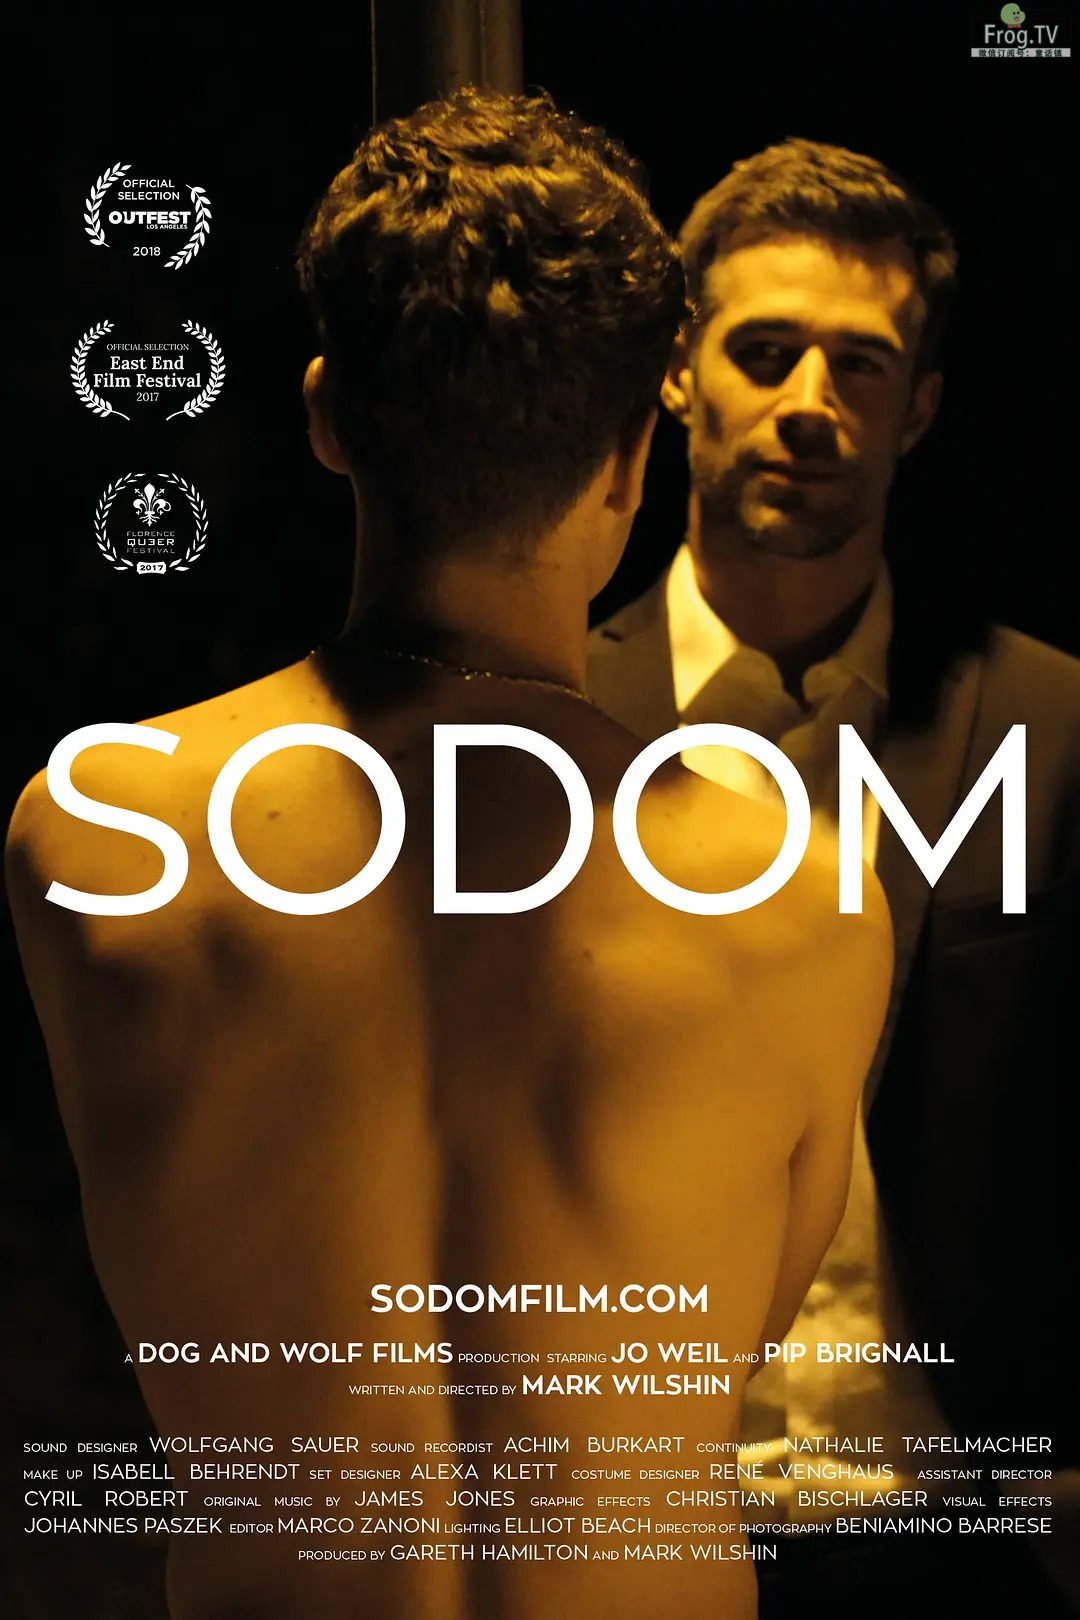 堕落城 Sodom (2017)-S岛 (〃∇〃) 一个为动漫作者赞助の会员制平台-Sad.me